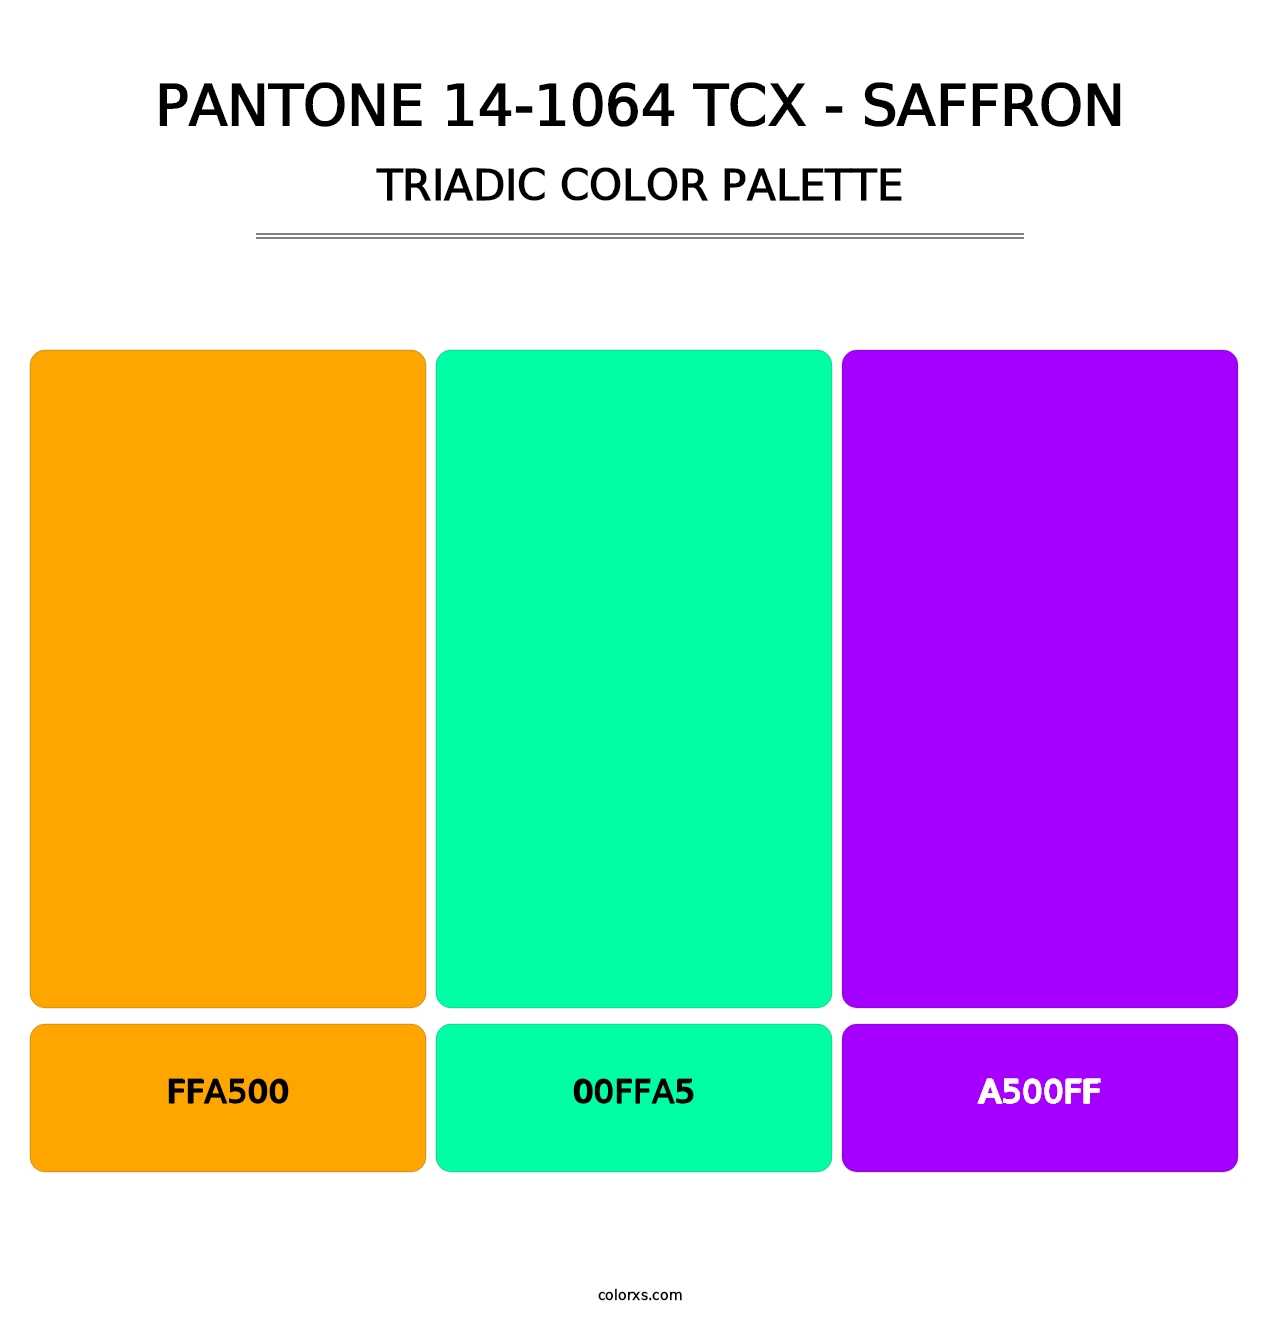 PANTONE 14-1064 TCX - Saffron - Triadic Color Palette